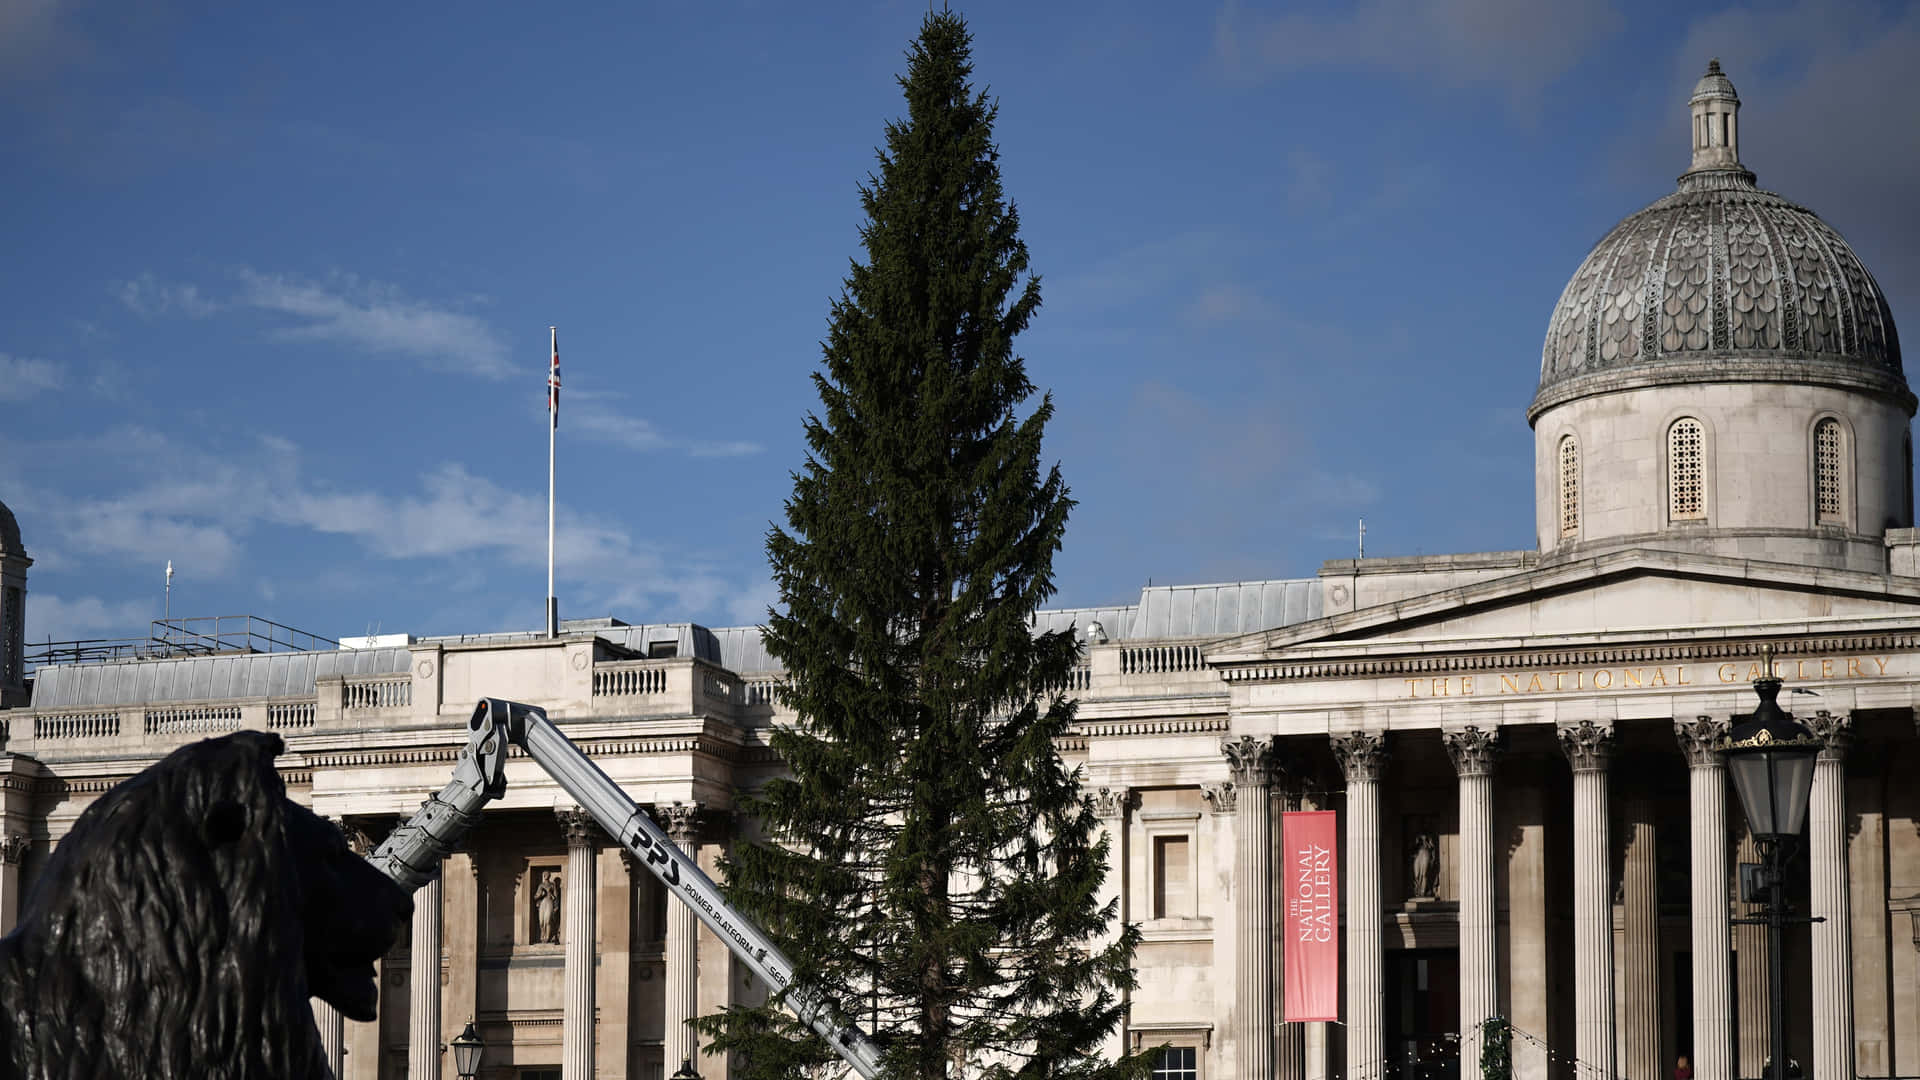 Trafalgar Square Iconic Christmas Tree Background